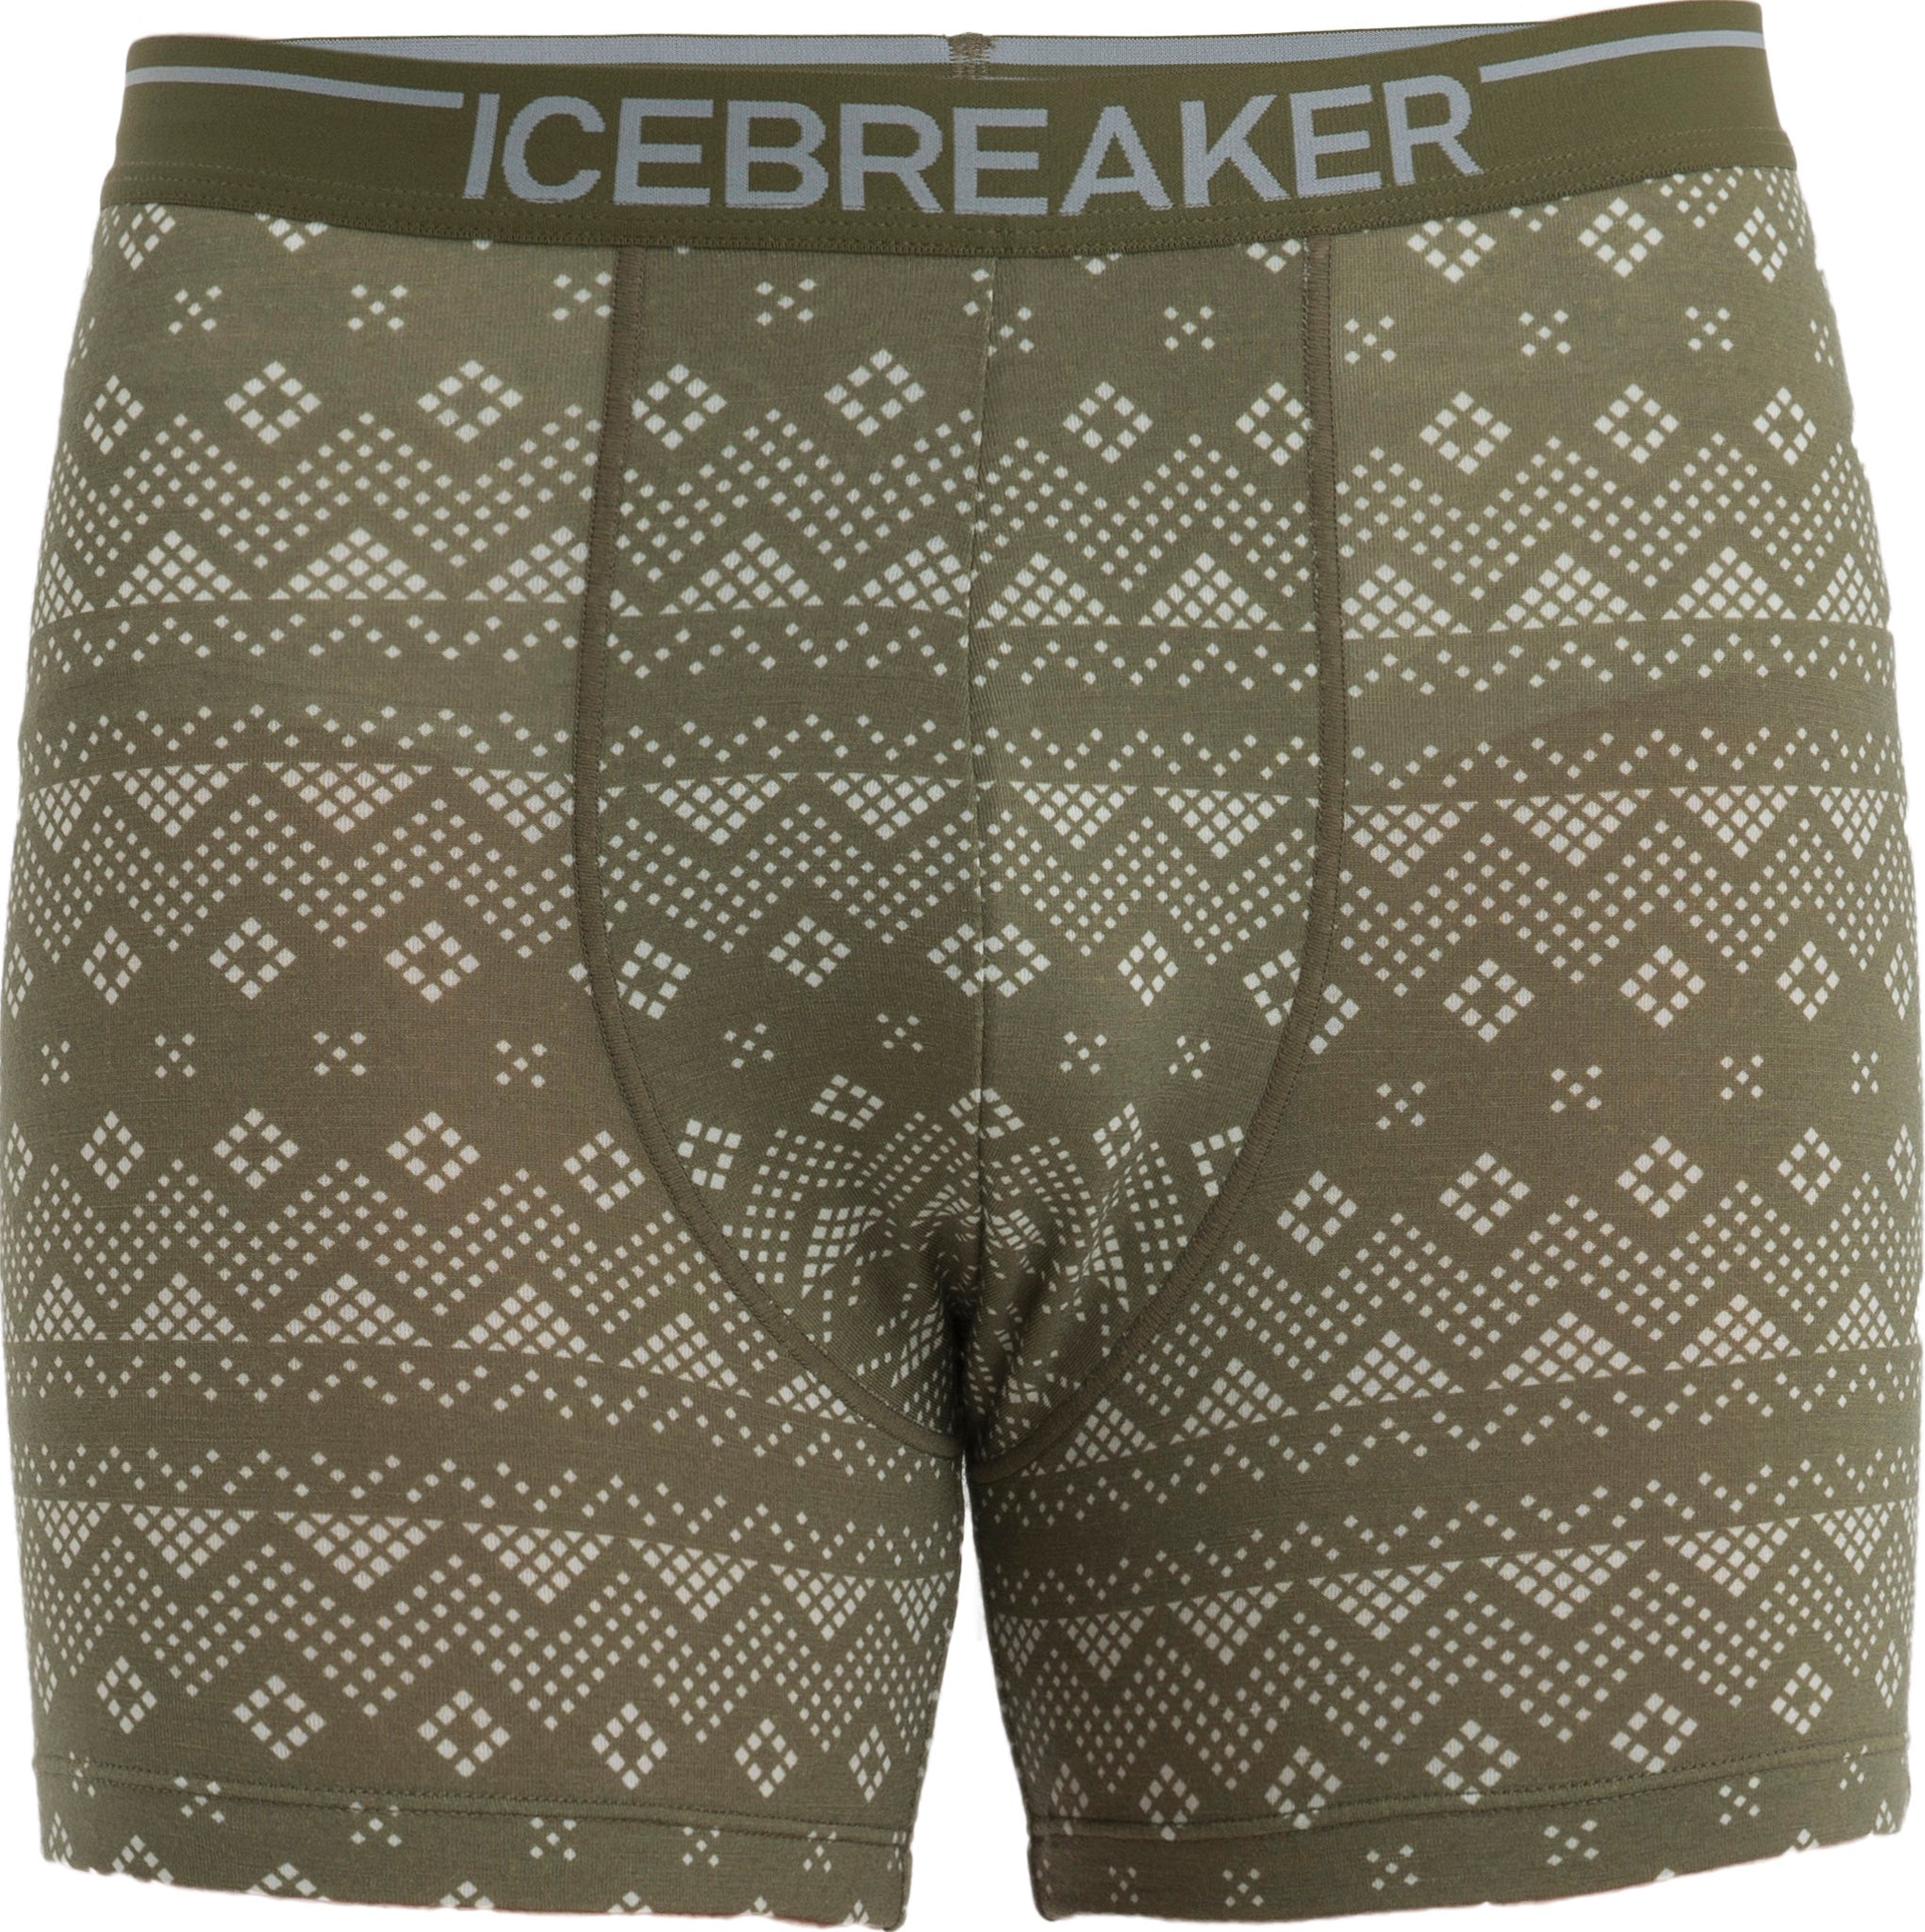 Icebreaker ANATOMICA BOXERES